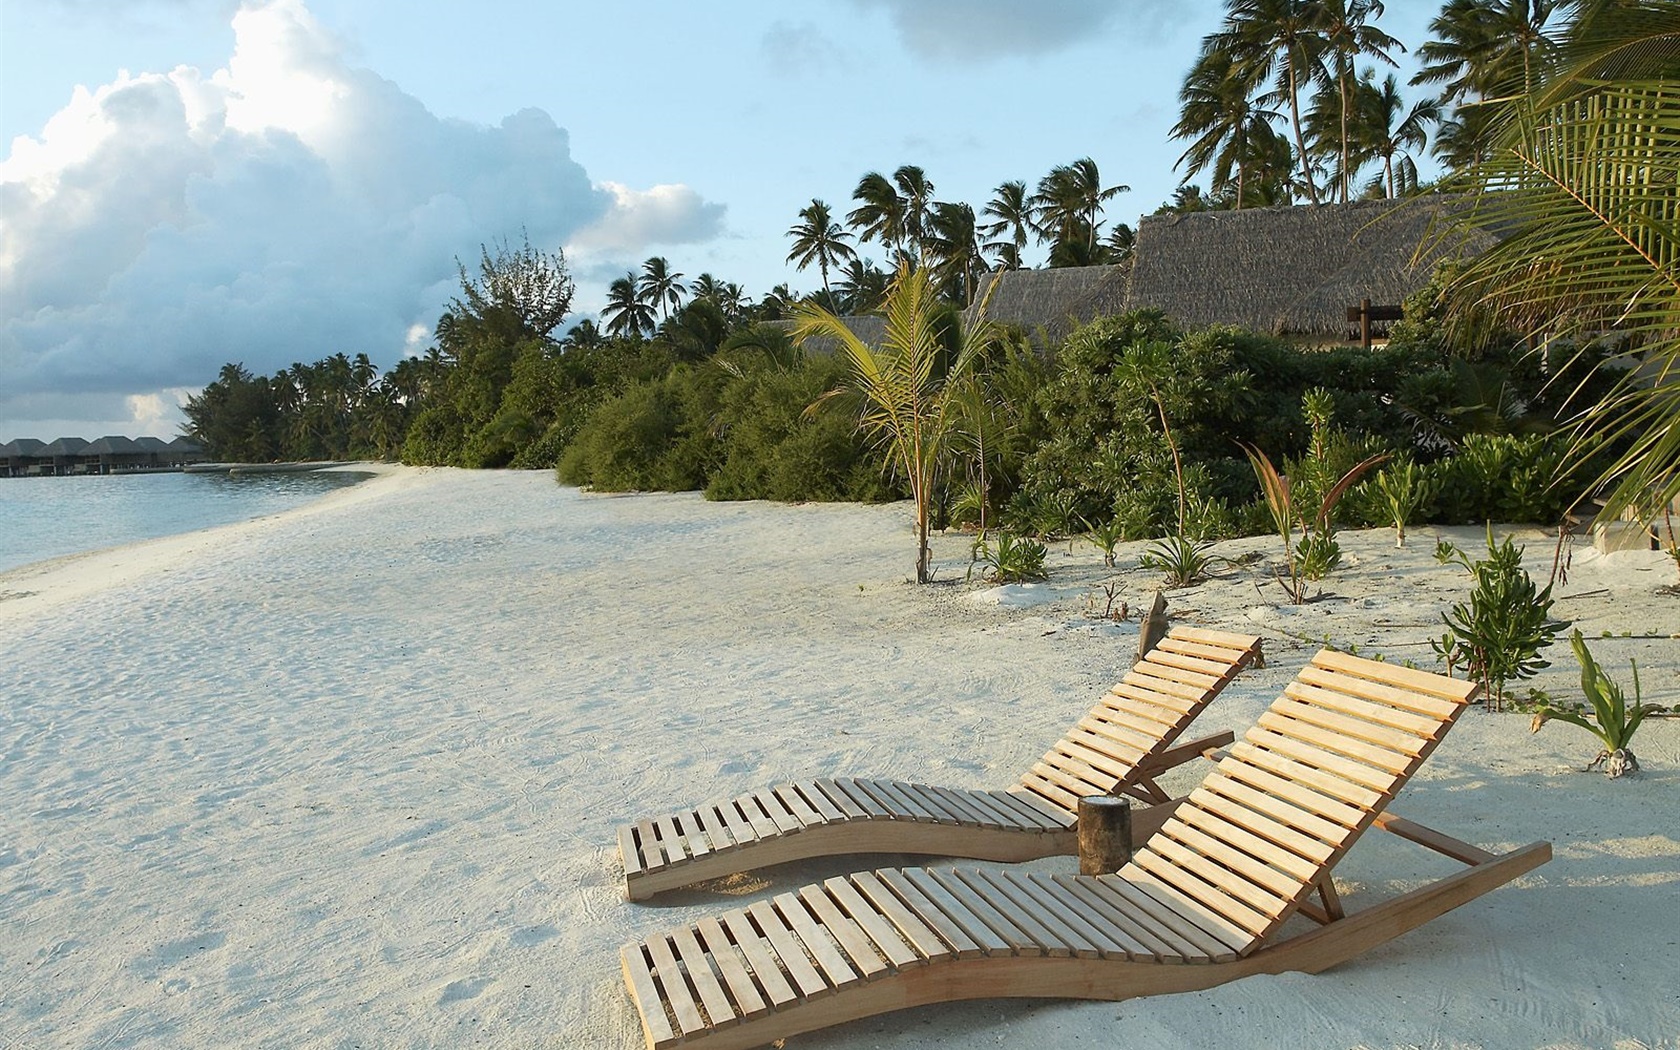 Beach, chair, palm trees, tropical 1680x1050 wallpaper